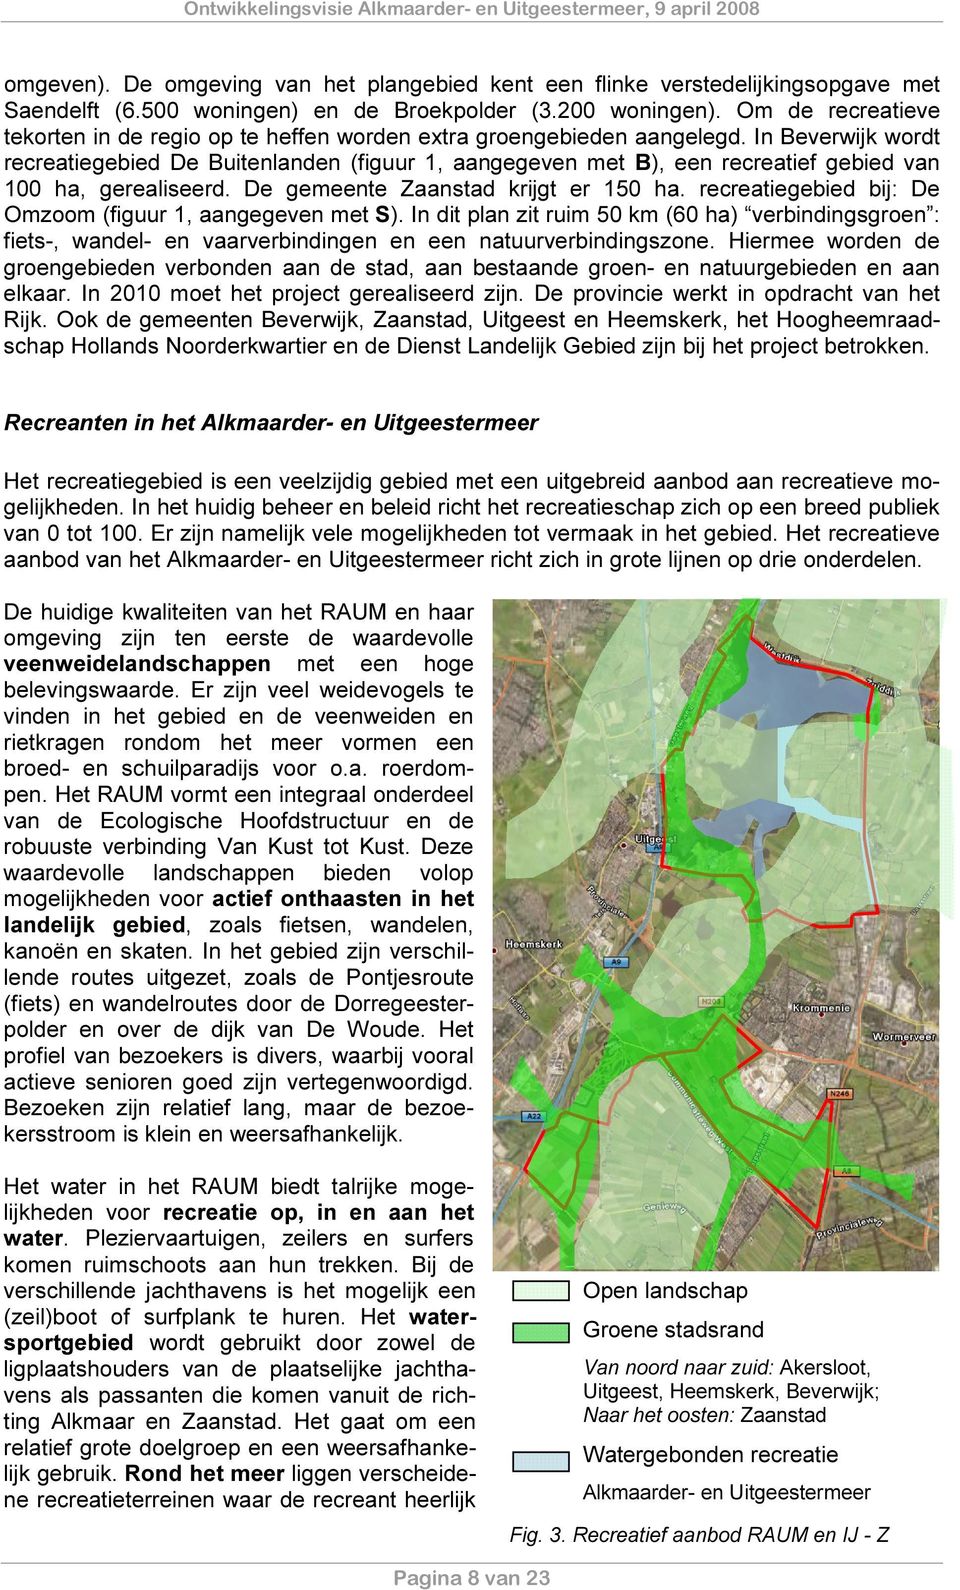 In Beverwijk wordt recreatiegebied De Buitenlanden (figuur 1, aangegeven met B), een recreatief gebied van 100 ha, gerealiseerd. De gemeente Zaanstad krijgt er 150 ha.